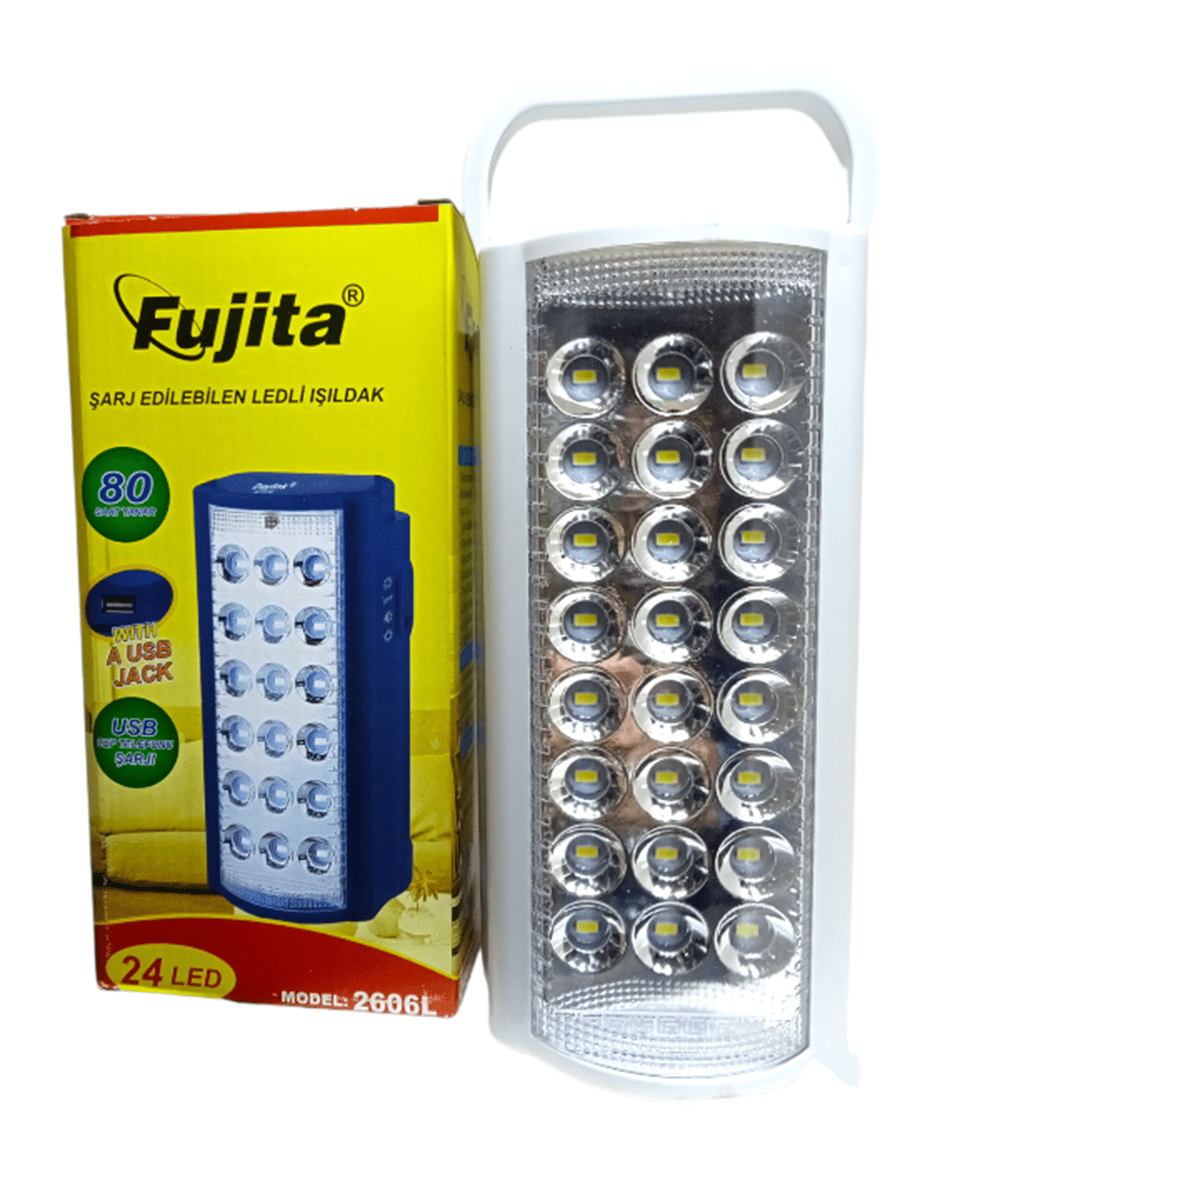 Fujita 2606L USB Şarj Çıkışlı 24 LED 80 Saat Akülü Şarjlı Işıldak